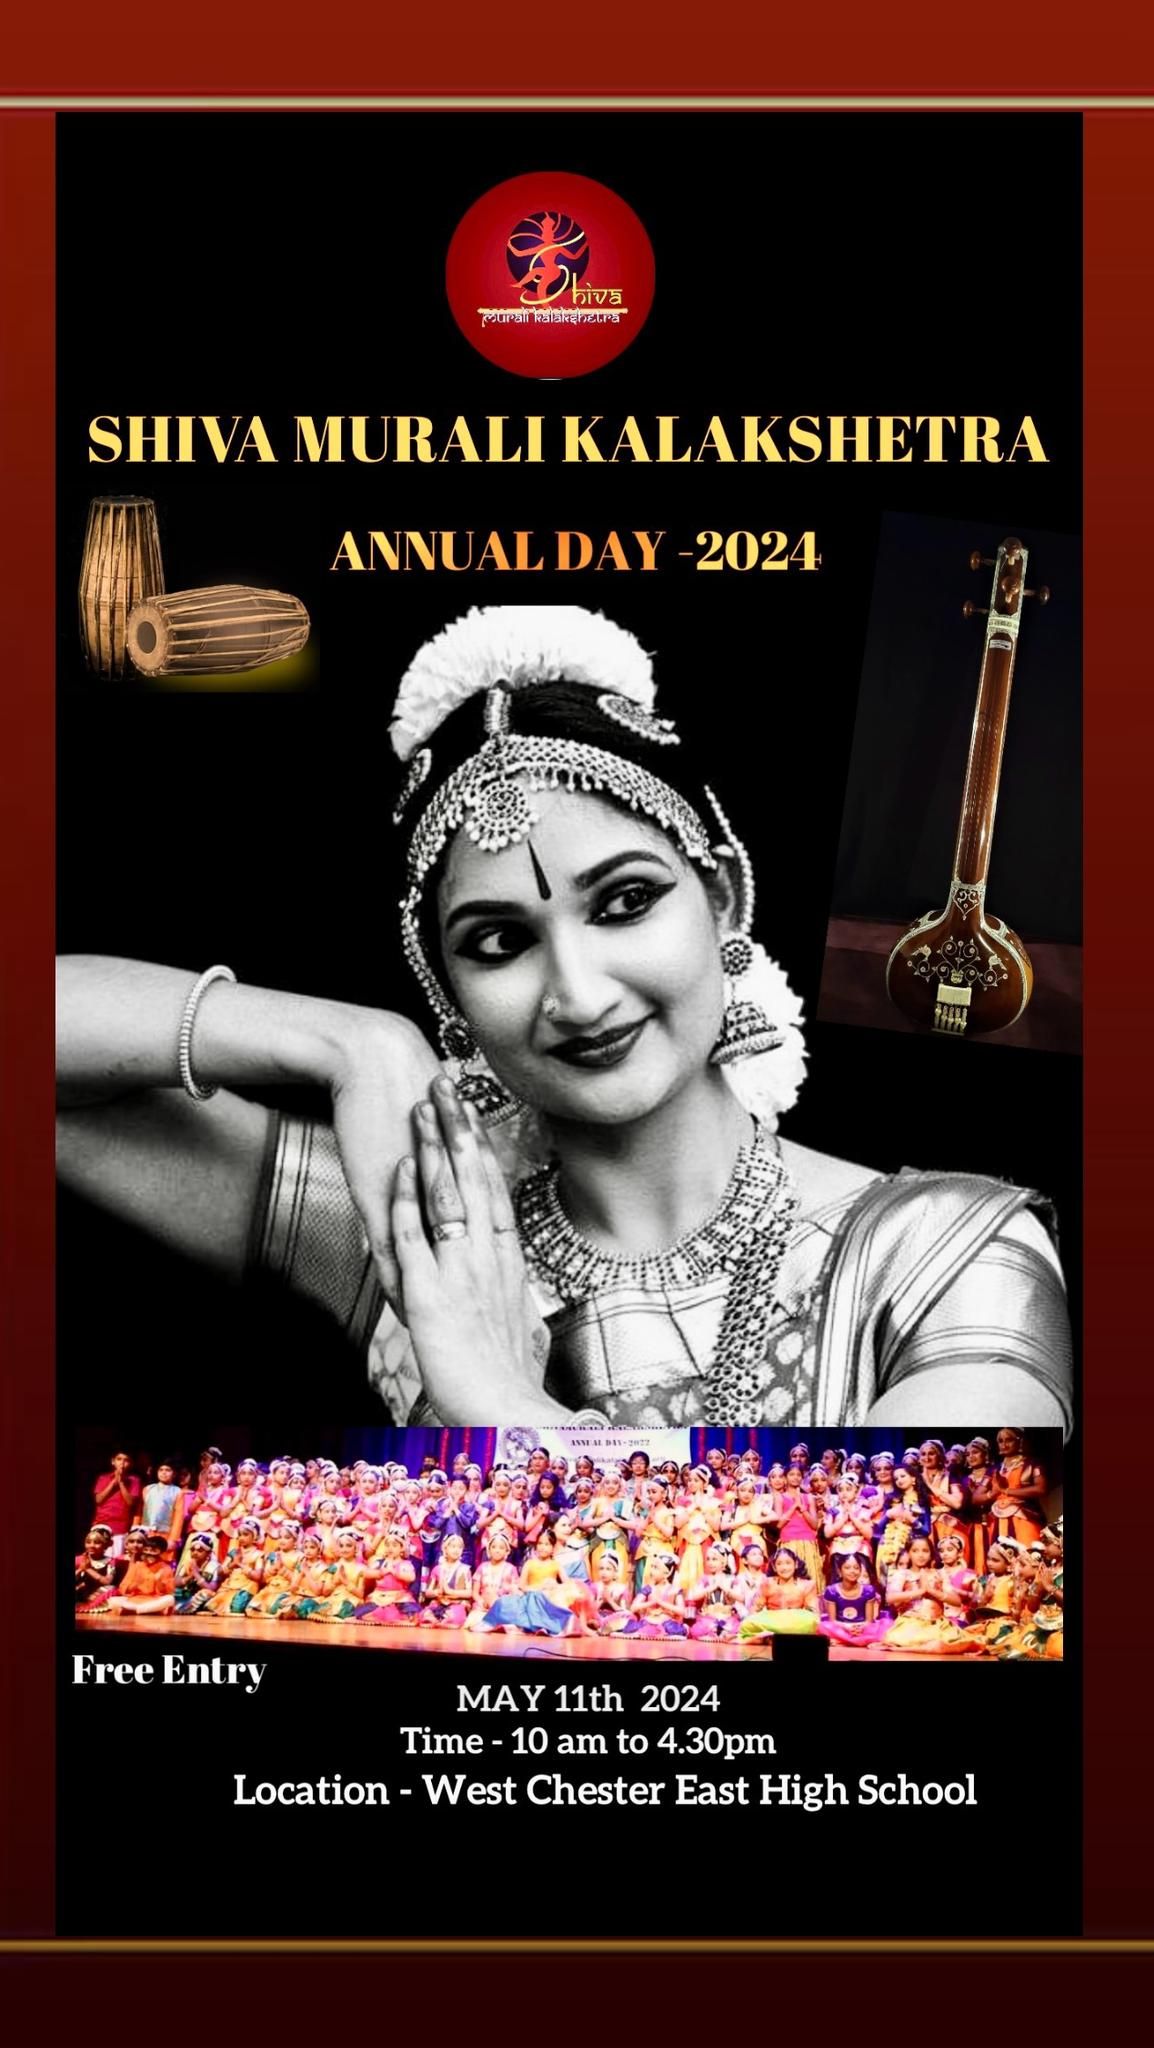 Shiva Murali Kalakshtetra Annual Day 